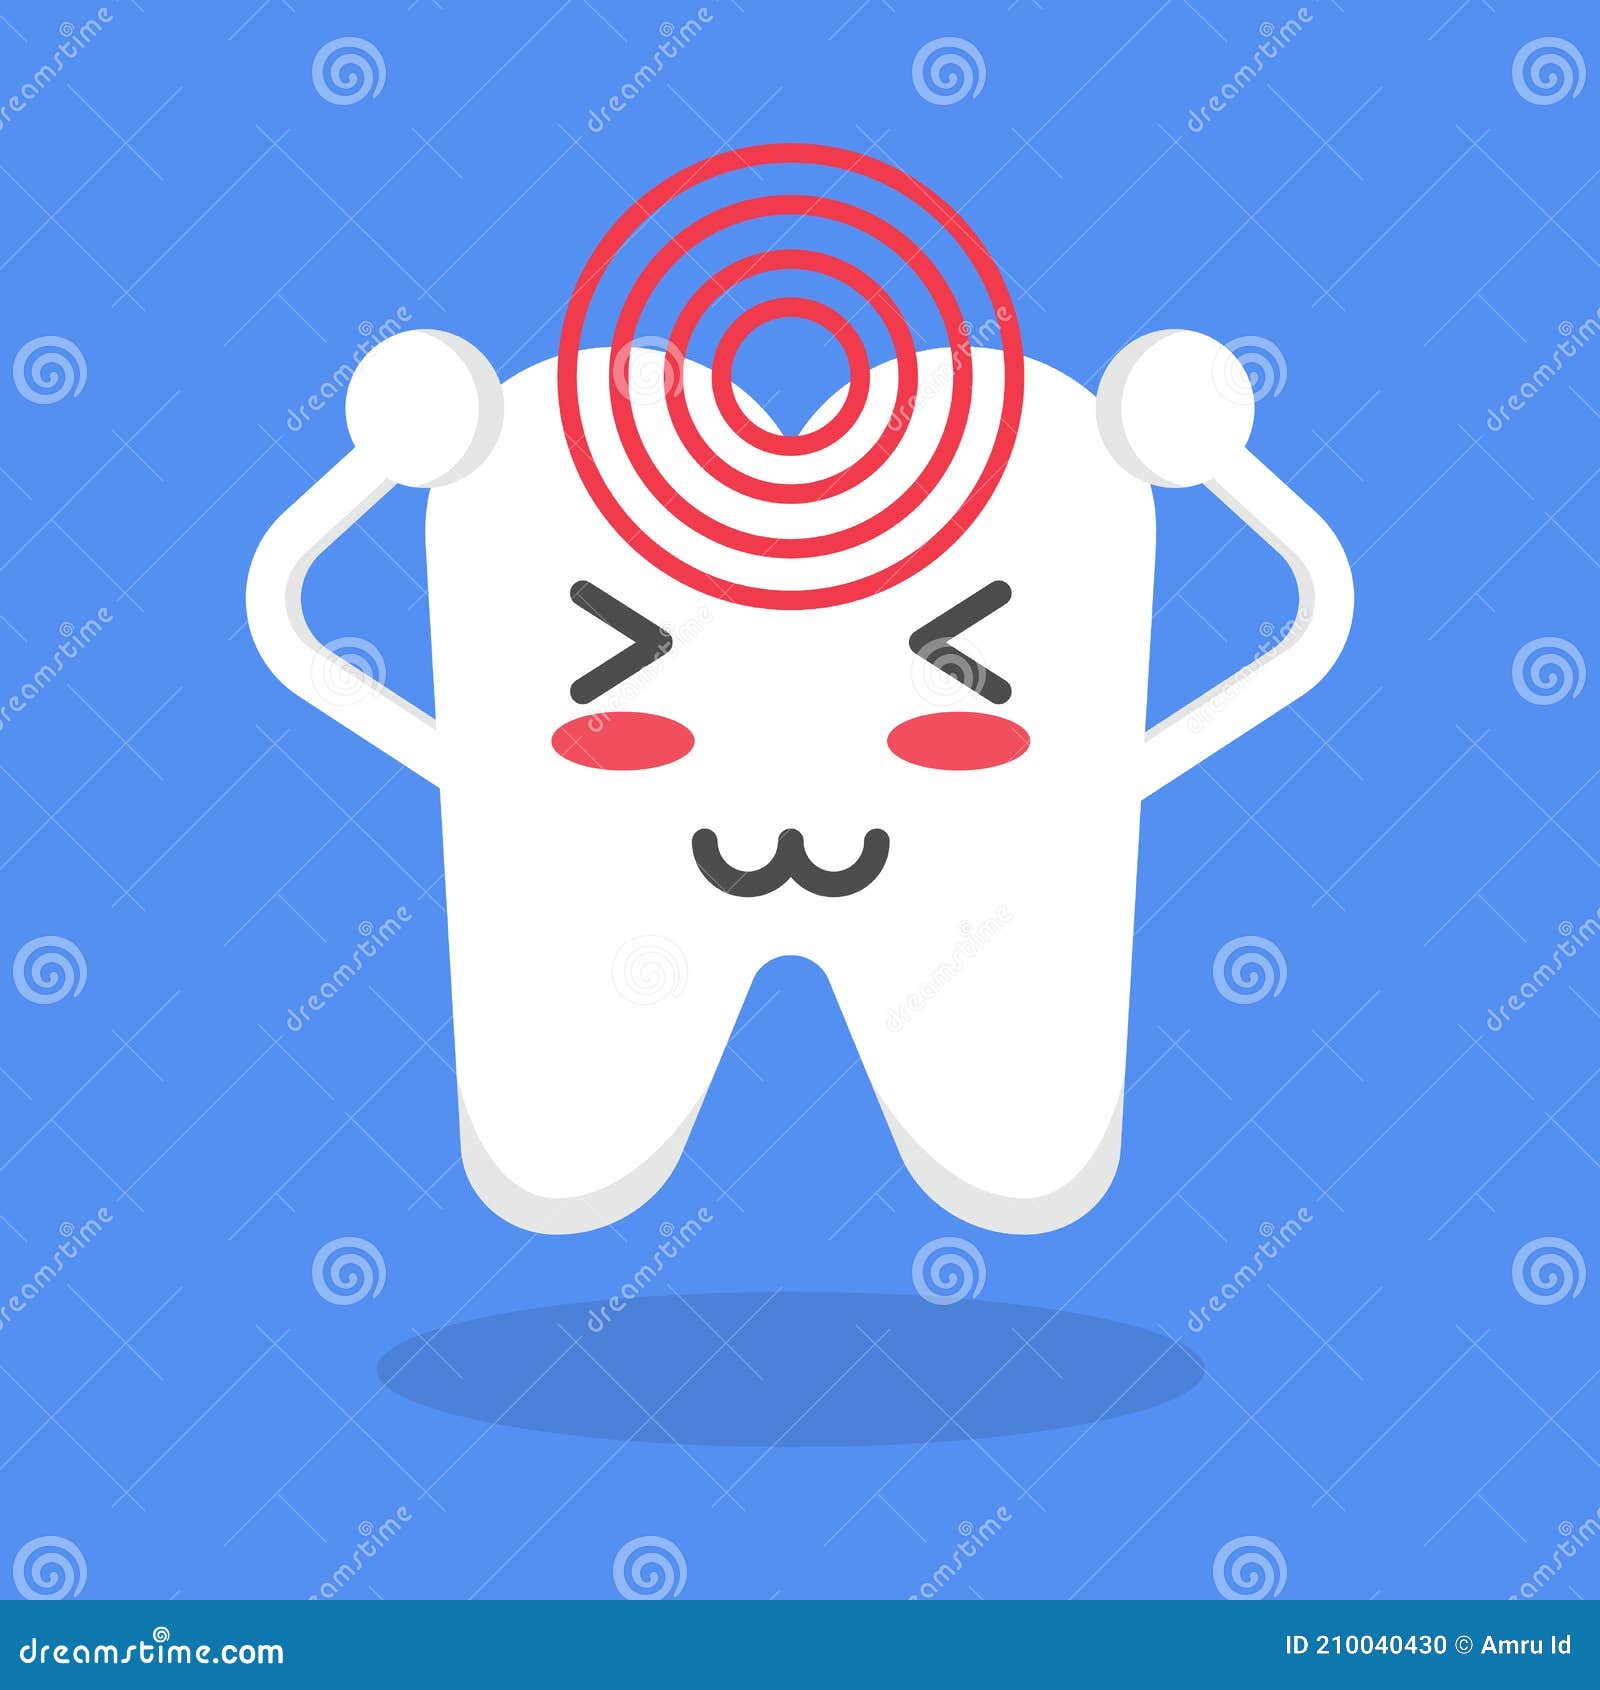 牙疼圖案素材 | PNG和向量圖 | 透明背景圖片 | 免費下载 - Pngtree